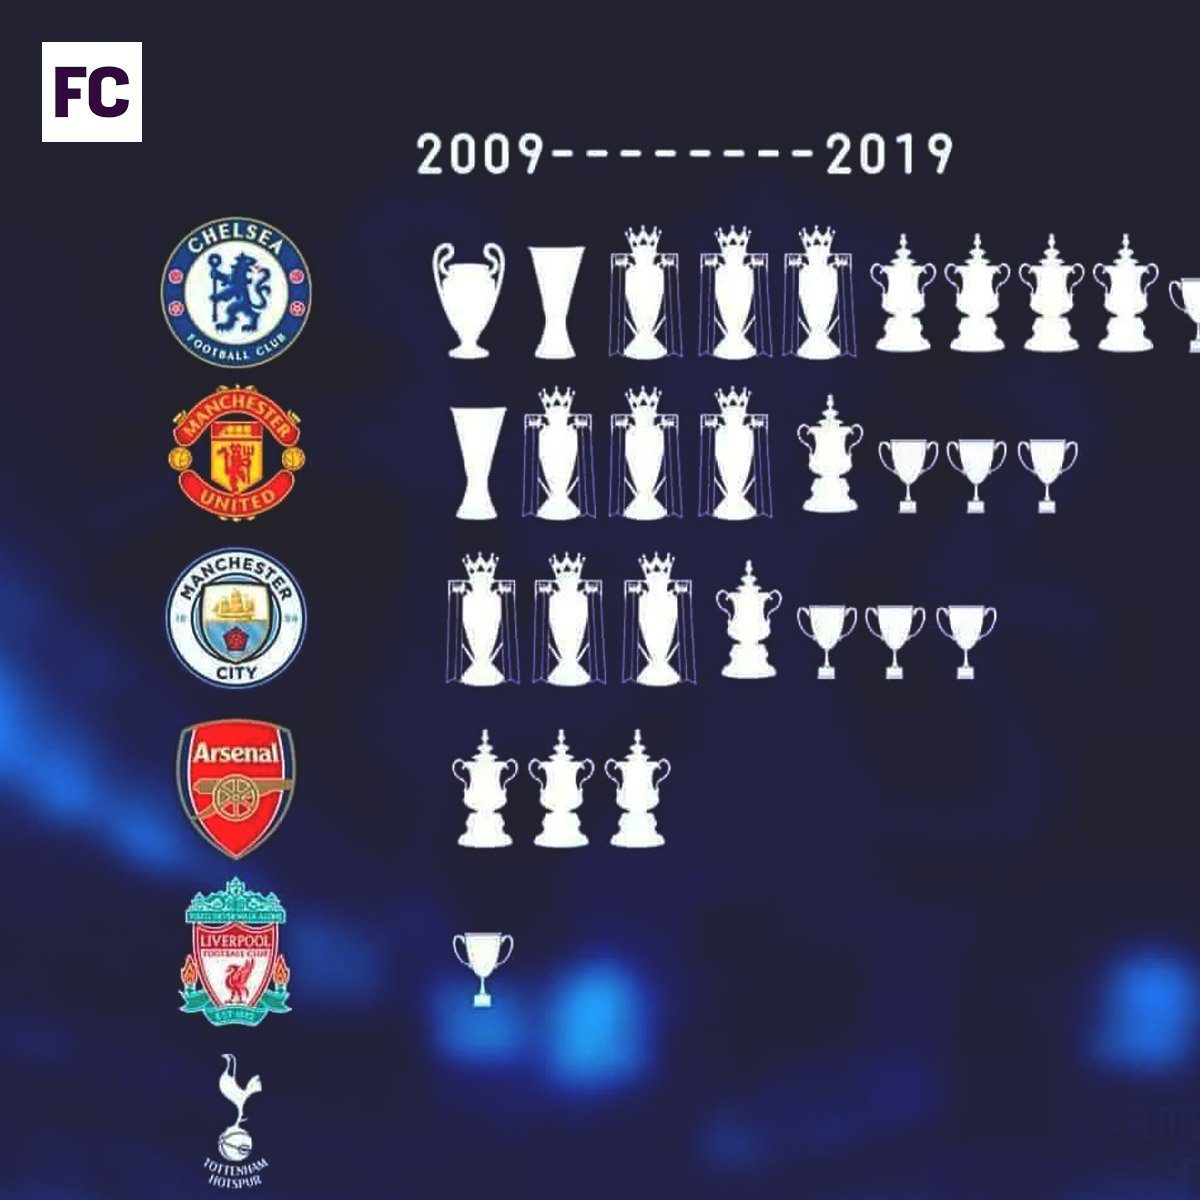 ¿Cuántas copas tiene el Chelsea en total